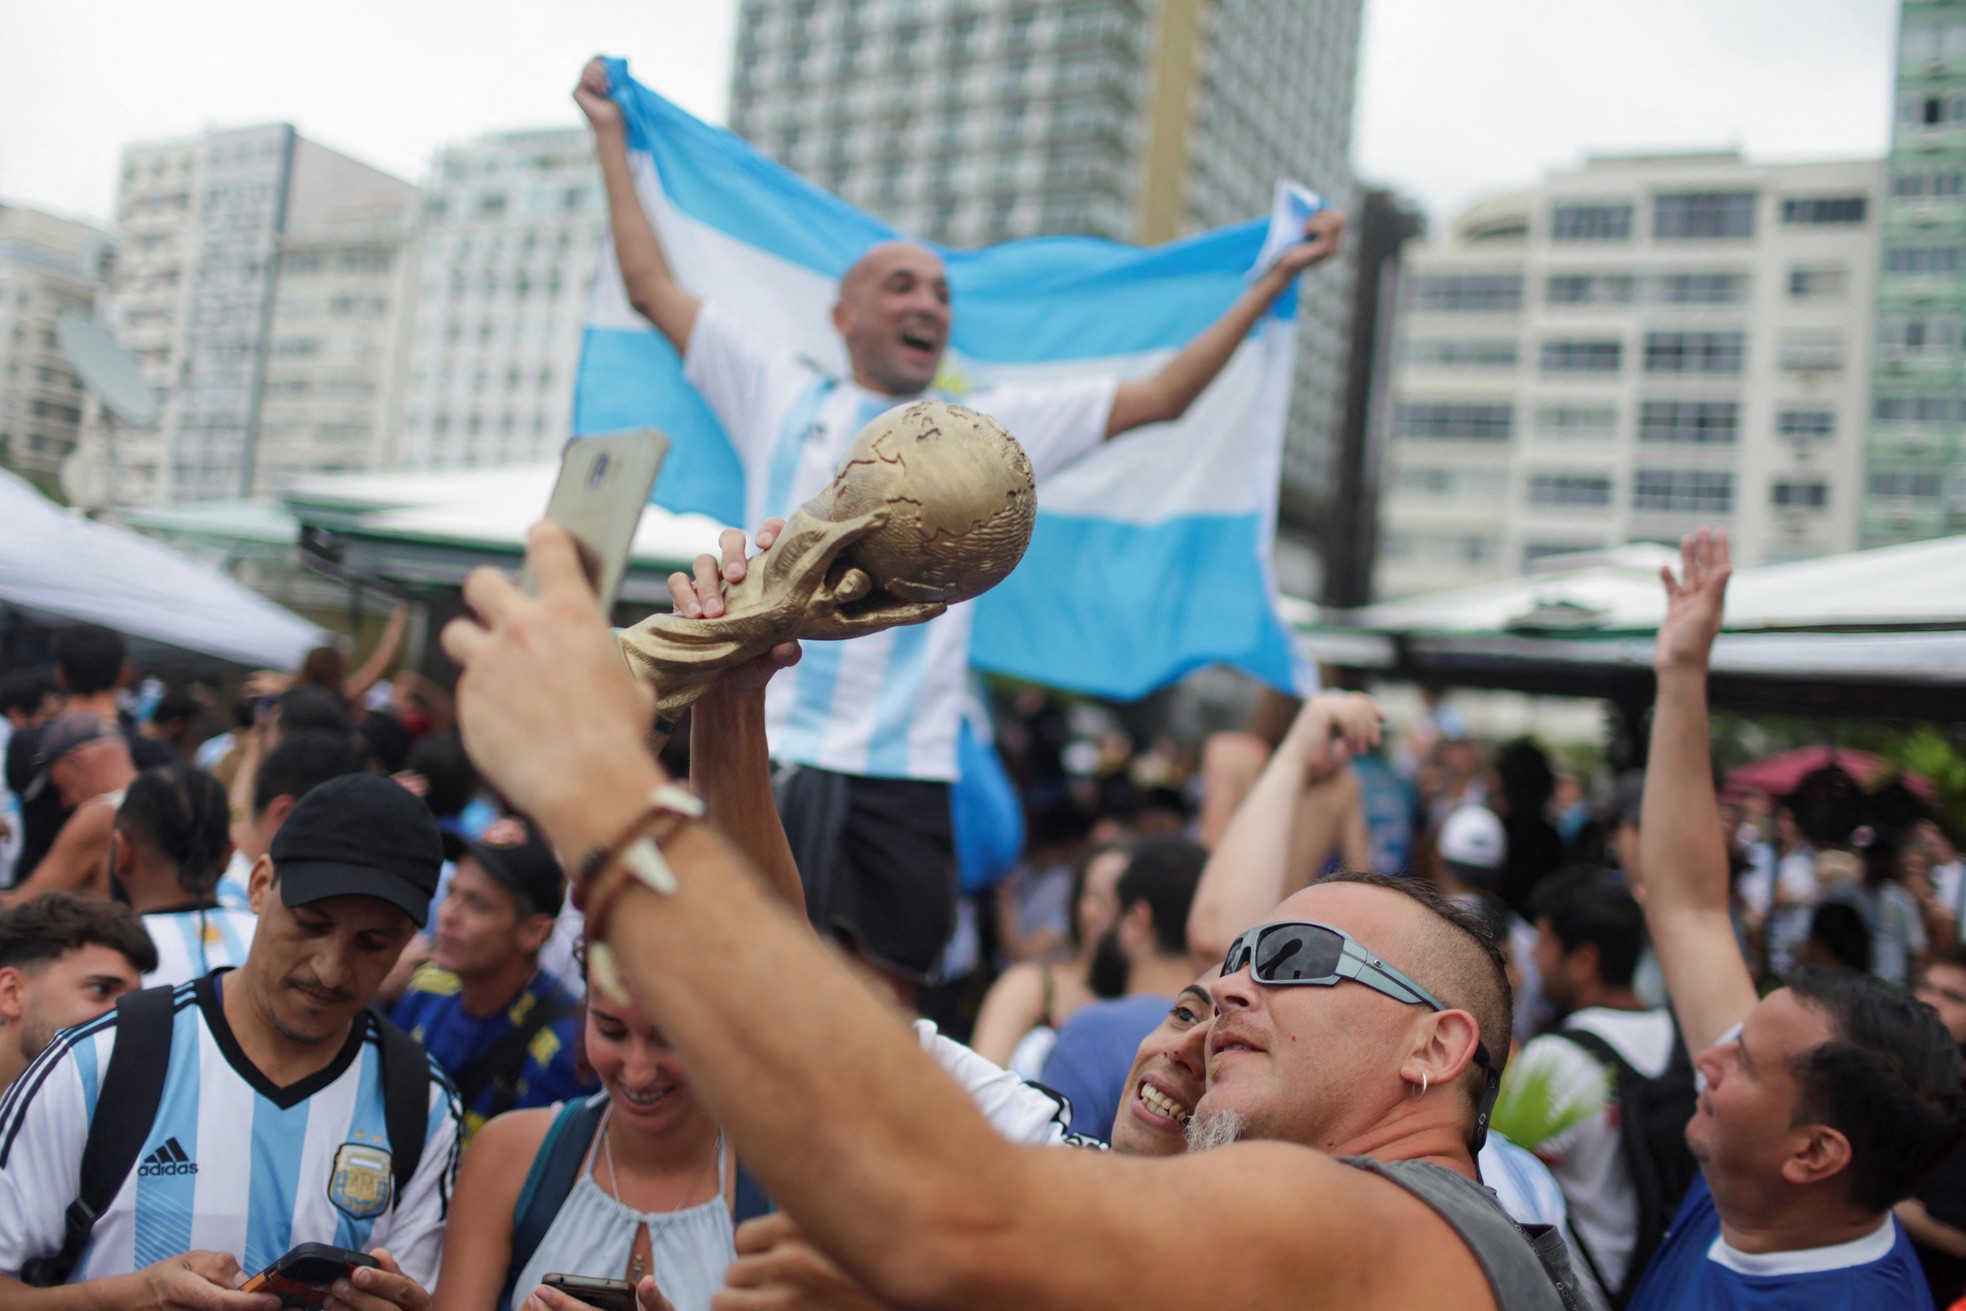 Thủ đô Argentina chìm trong mưa nước mắt vì hạnh phúc - Ảnh 13.